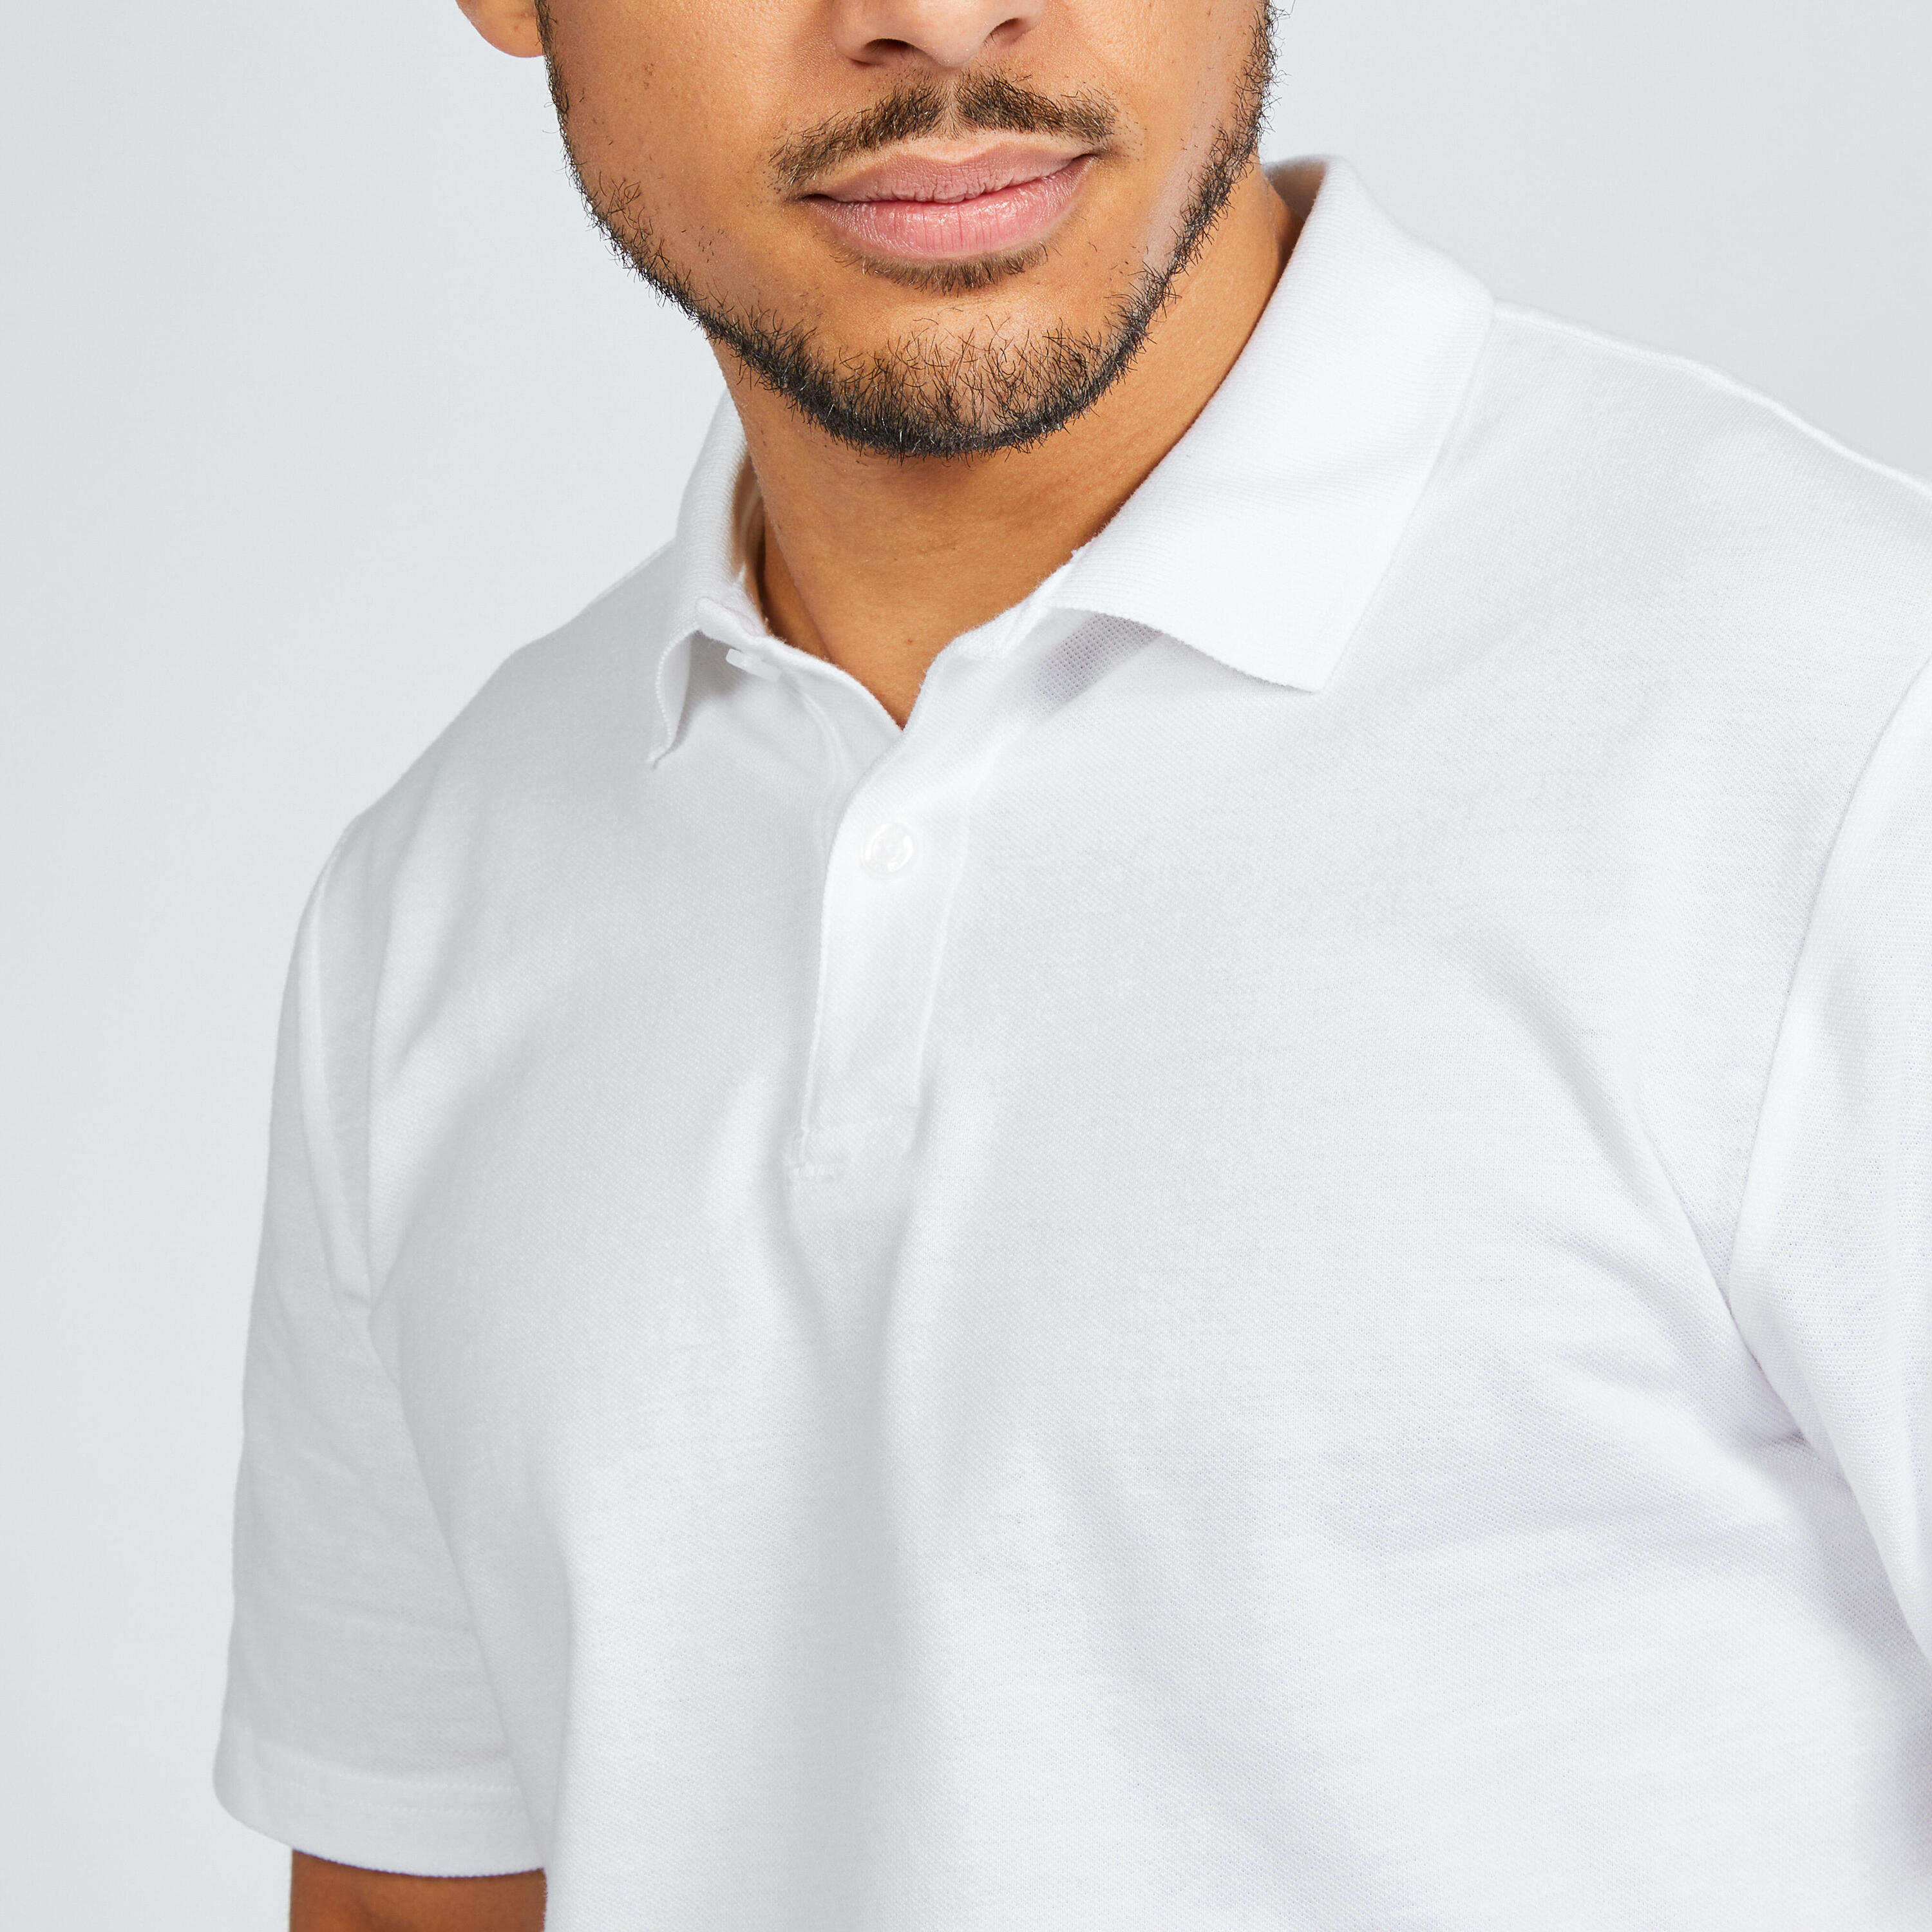 Men's short-sleeved golf polo shirt - MW100 white 5/6